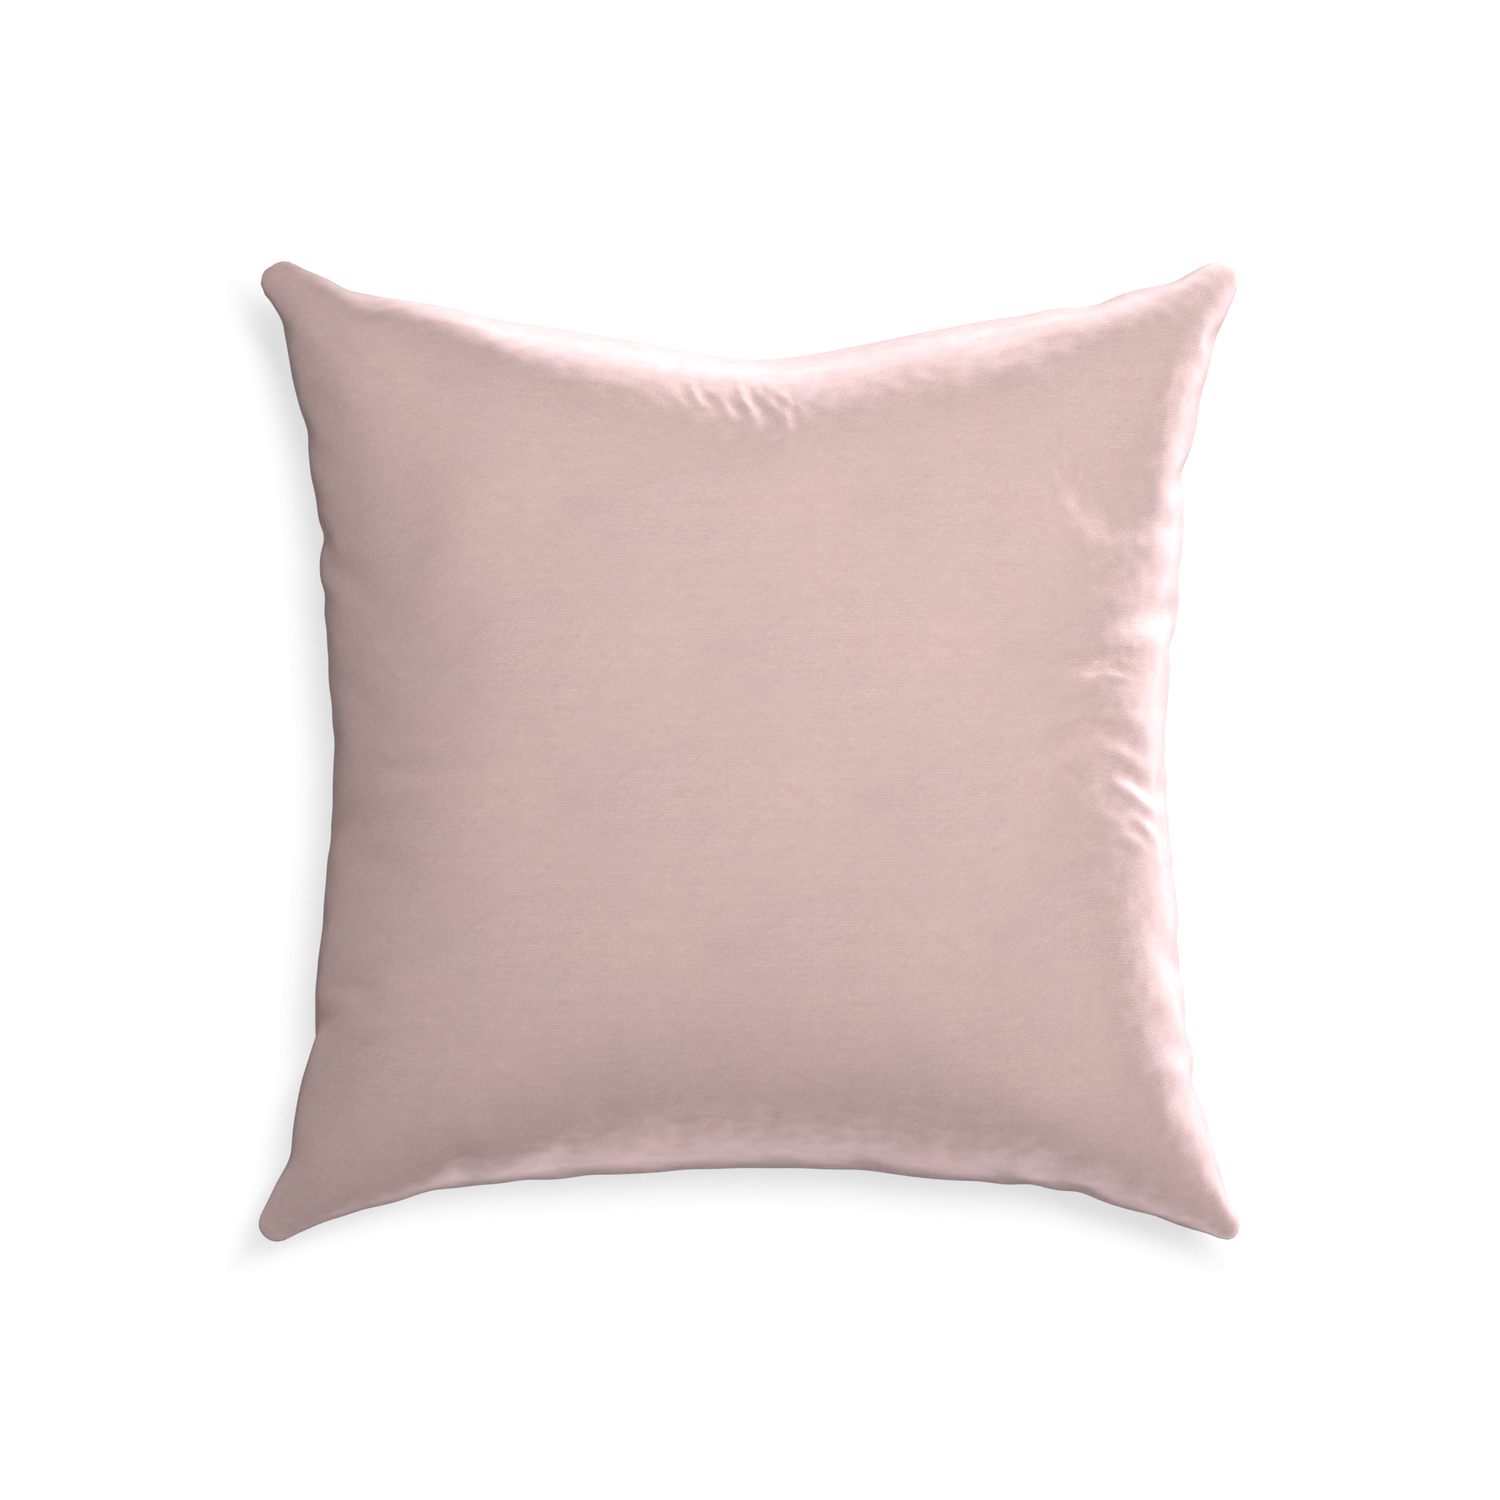 22-square rose velvet custom pillow with none on white background